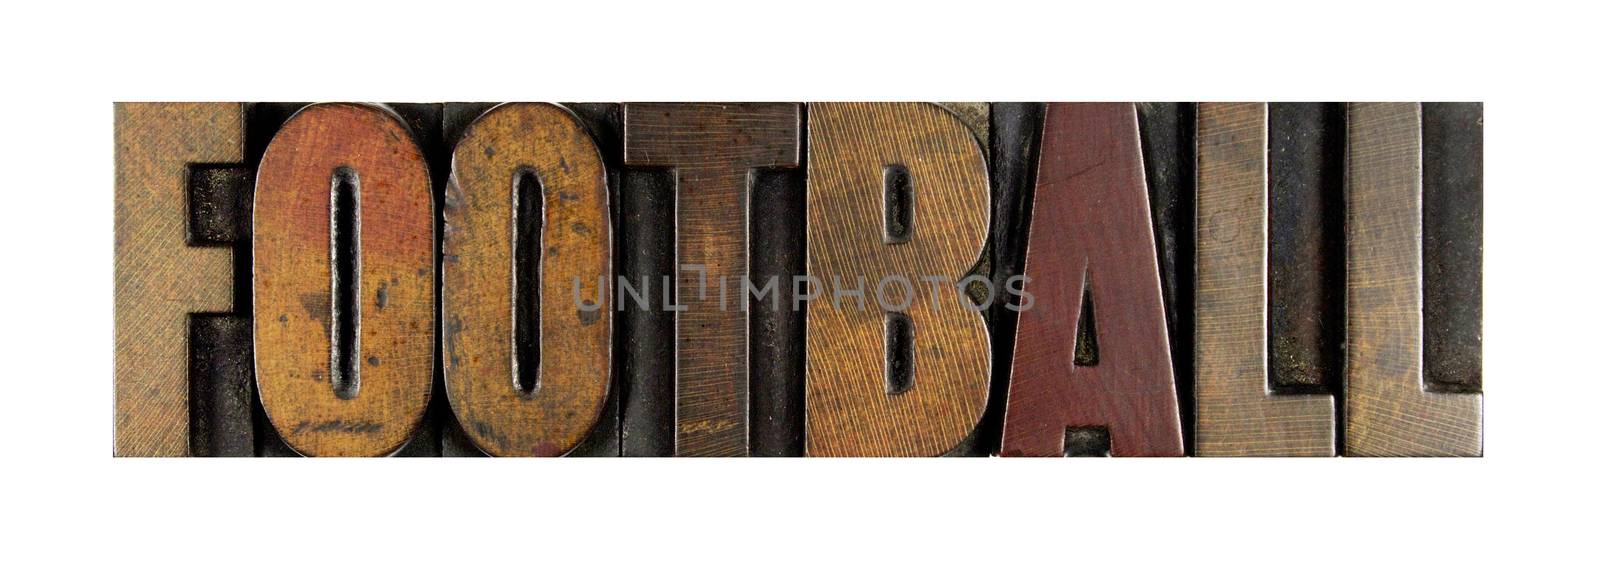 The word FOOTBALL written in vintage letterpress type